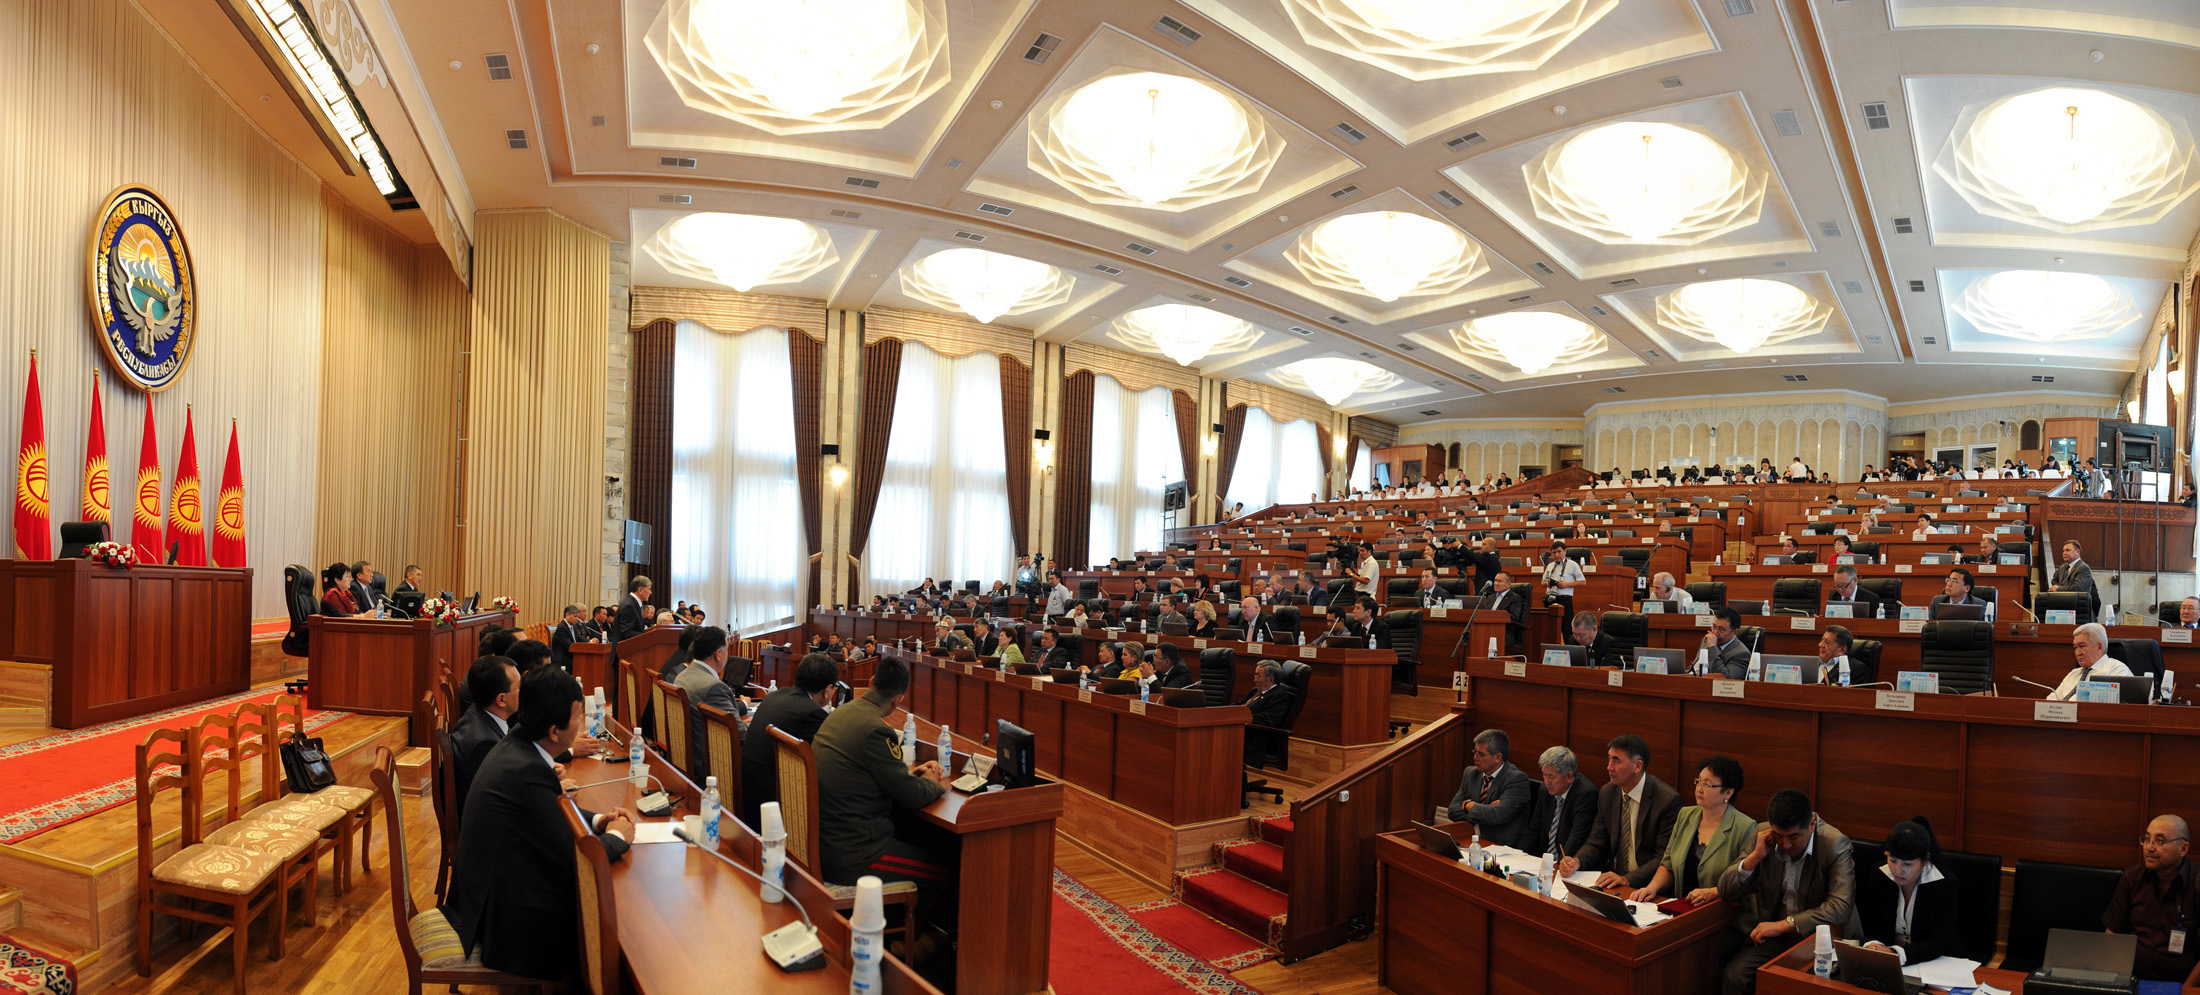 Депутат Осмонов опасается, что закон может использоваться властью против политических оппонентов.